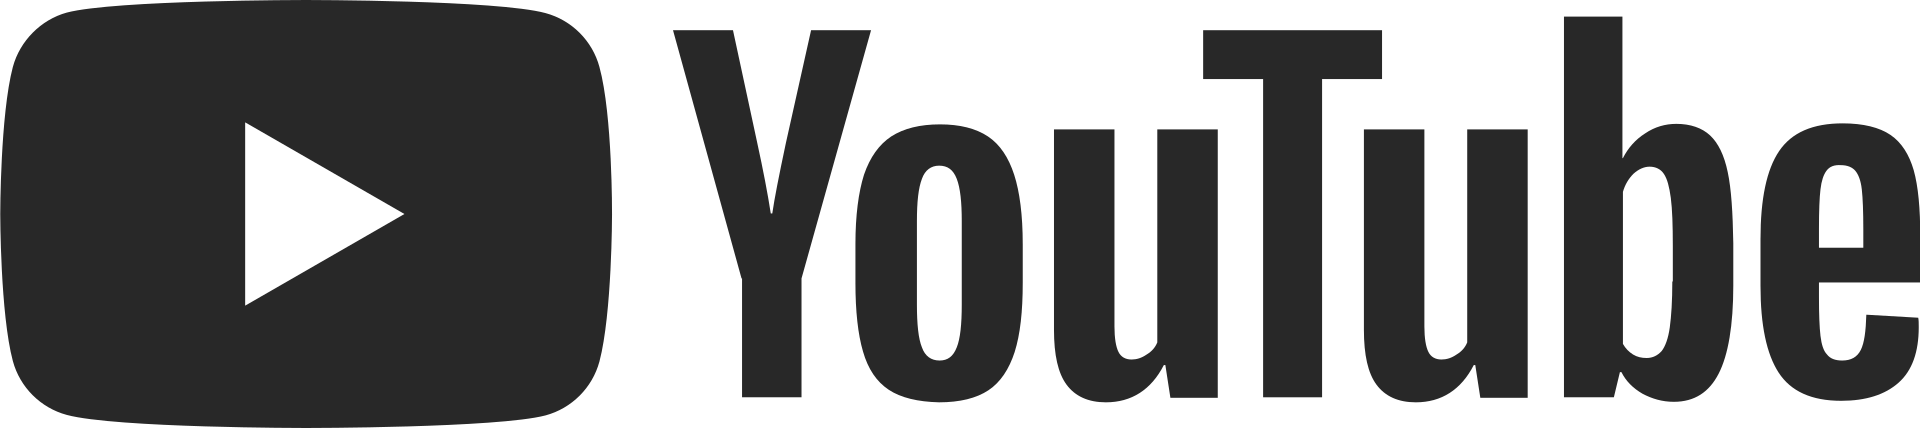 logo youtube hitam